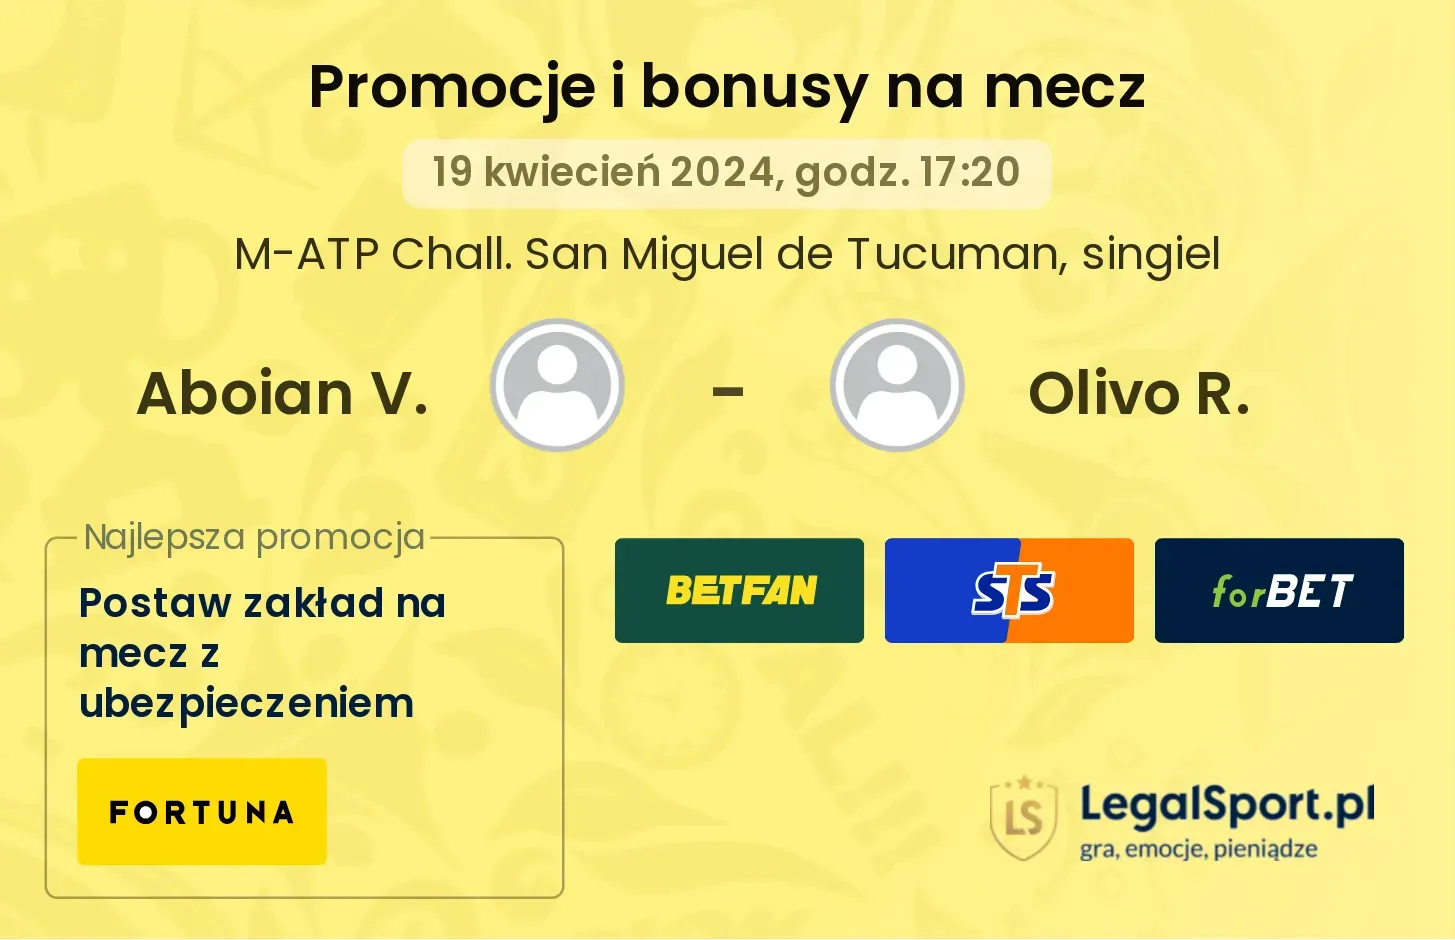 Aboian V. - Olivo R. promocje bonusy na mecz